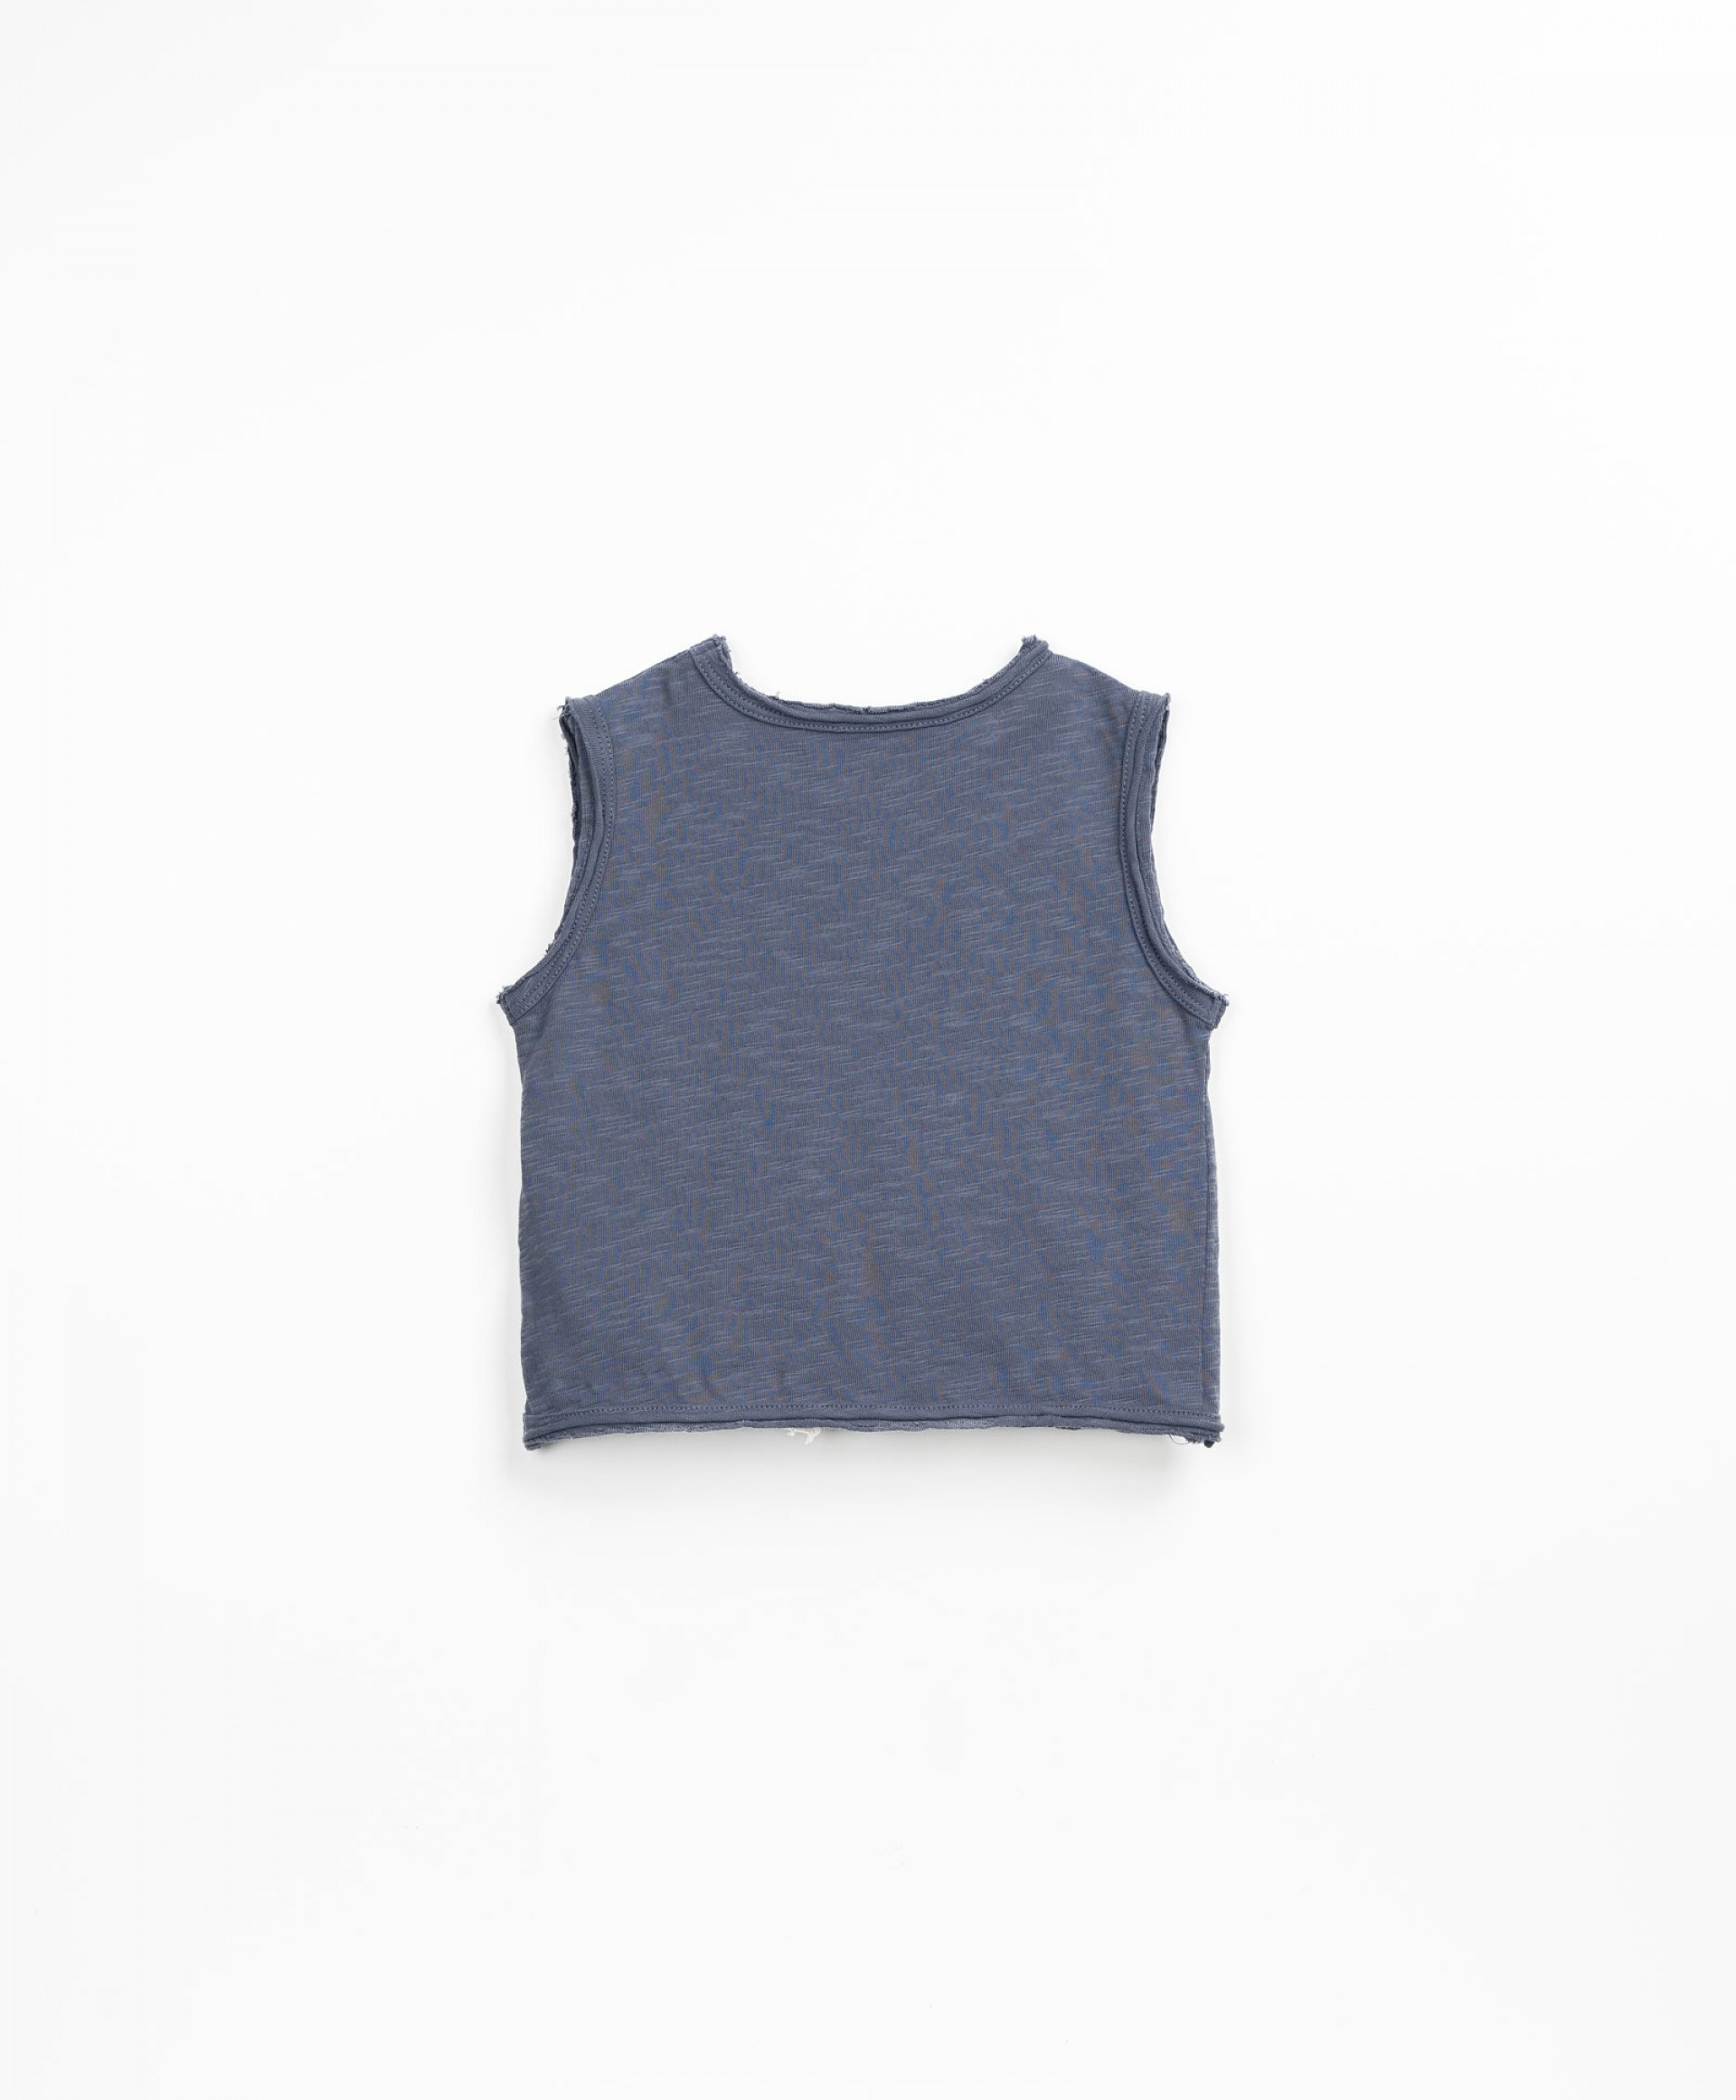 T-shirt com frase no peito | Textile Art